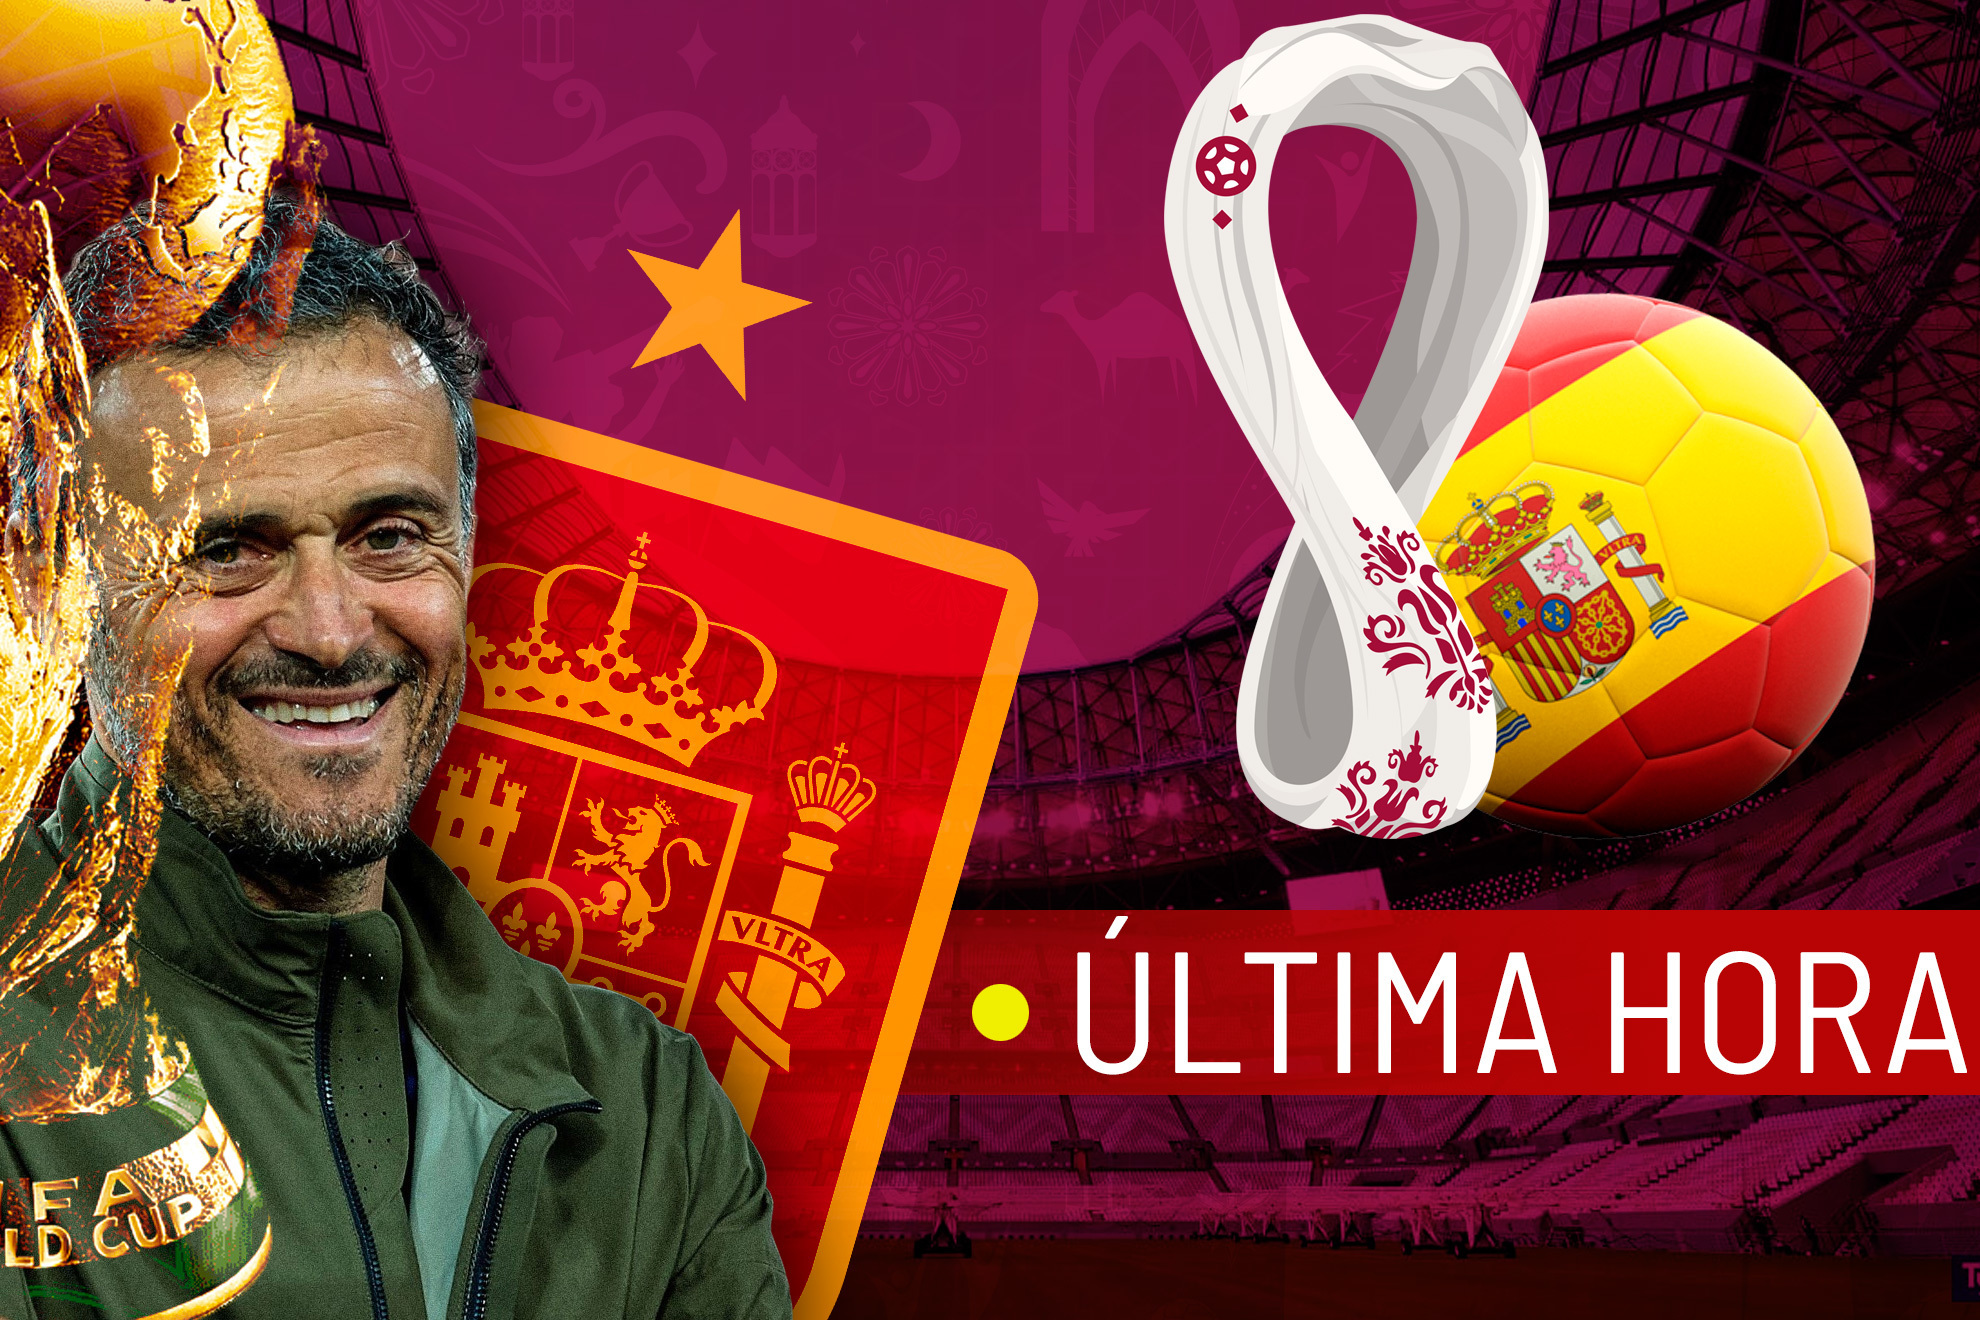 España en el Mundial de Qatar 2022 | Última hora de la selección española en la Copa del Mundo hoy en vivo